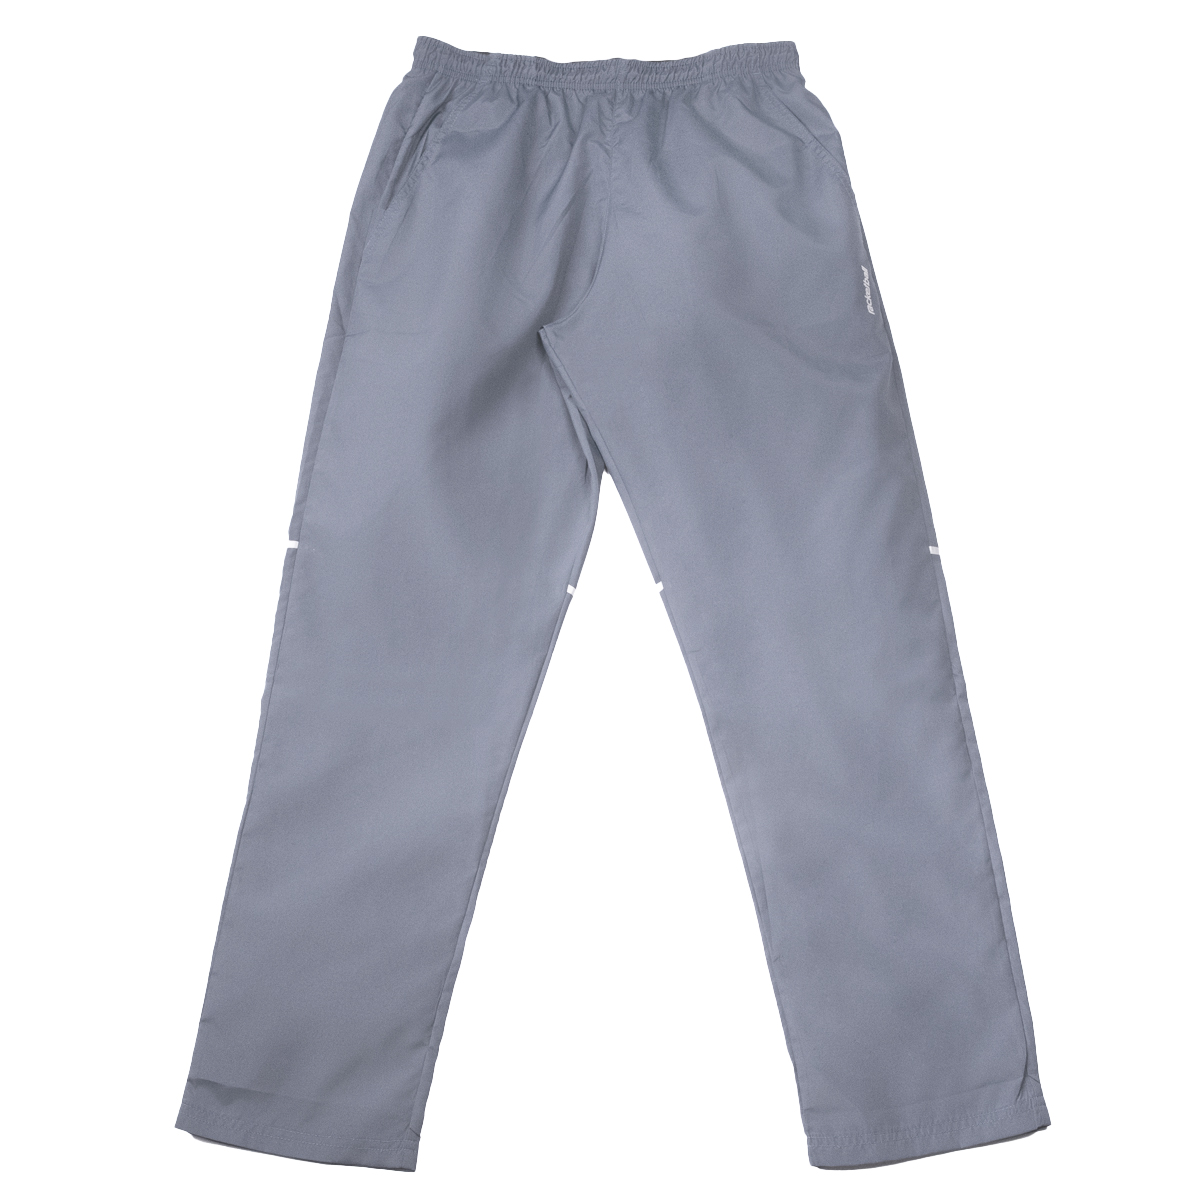 Pantalón deportivo para hombre, semi ajustado,color gris oscuro -  racketball movil